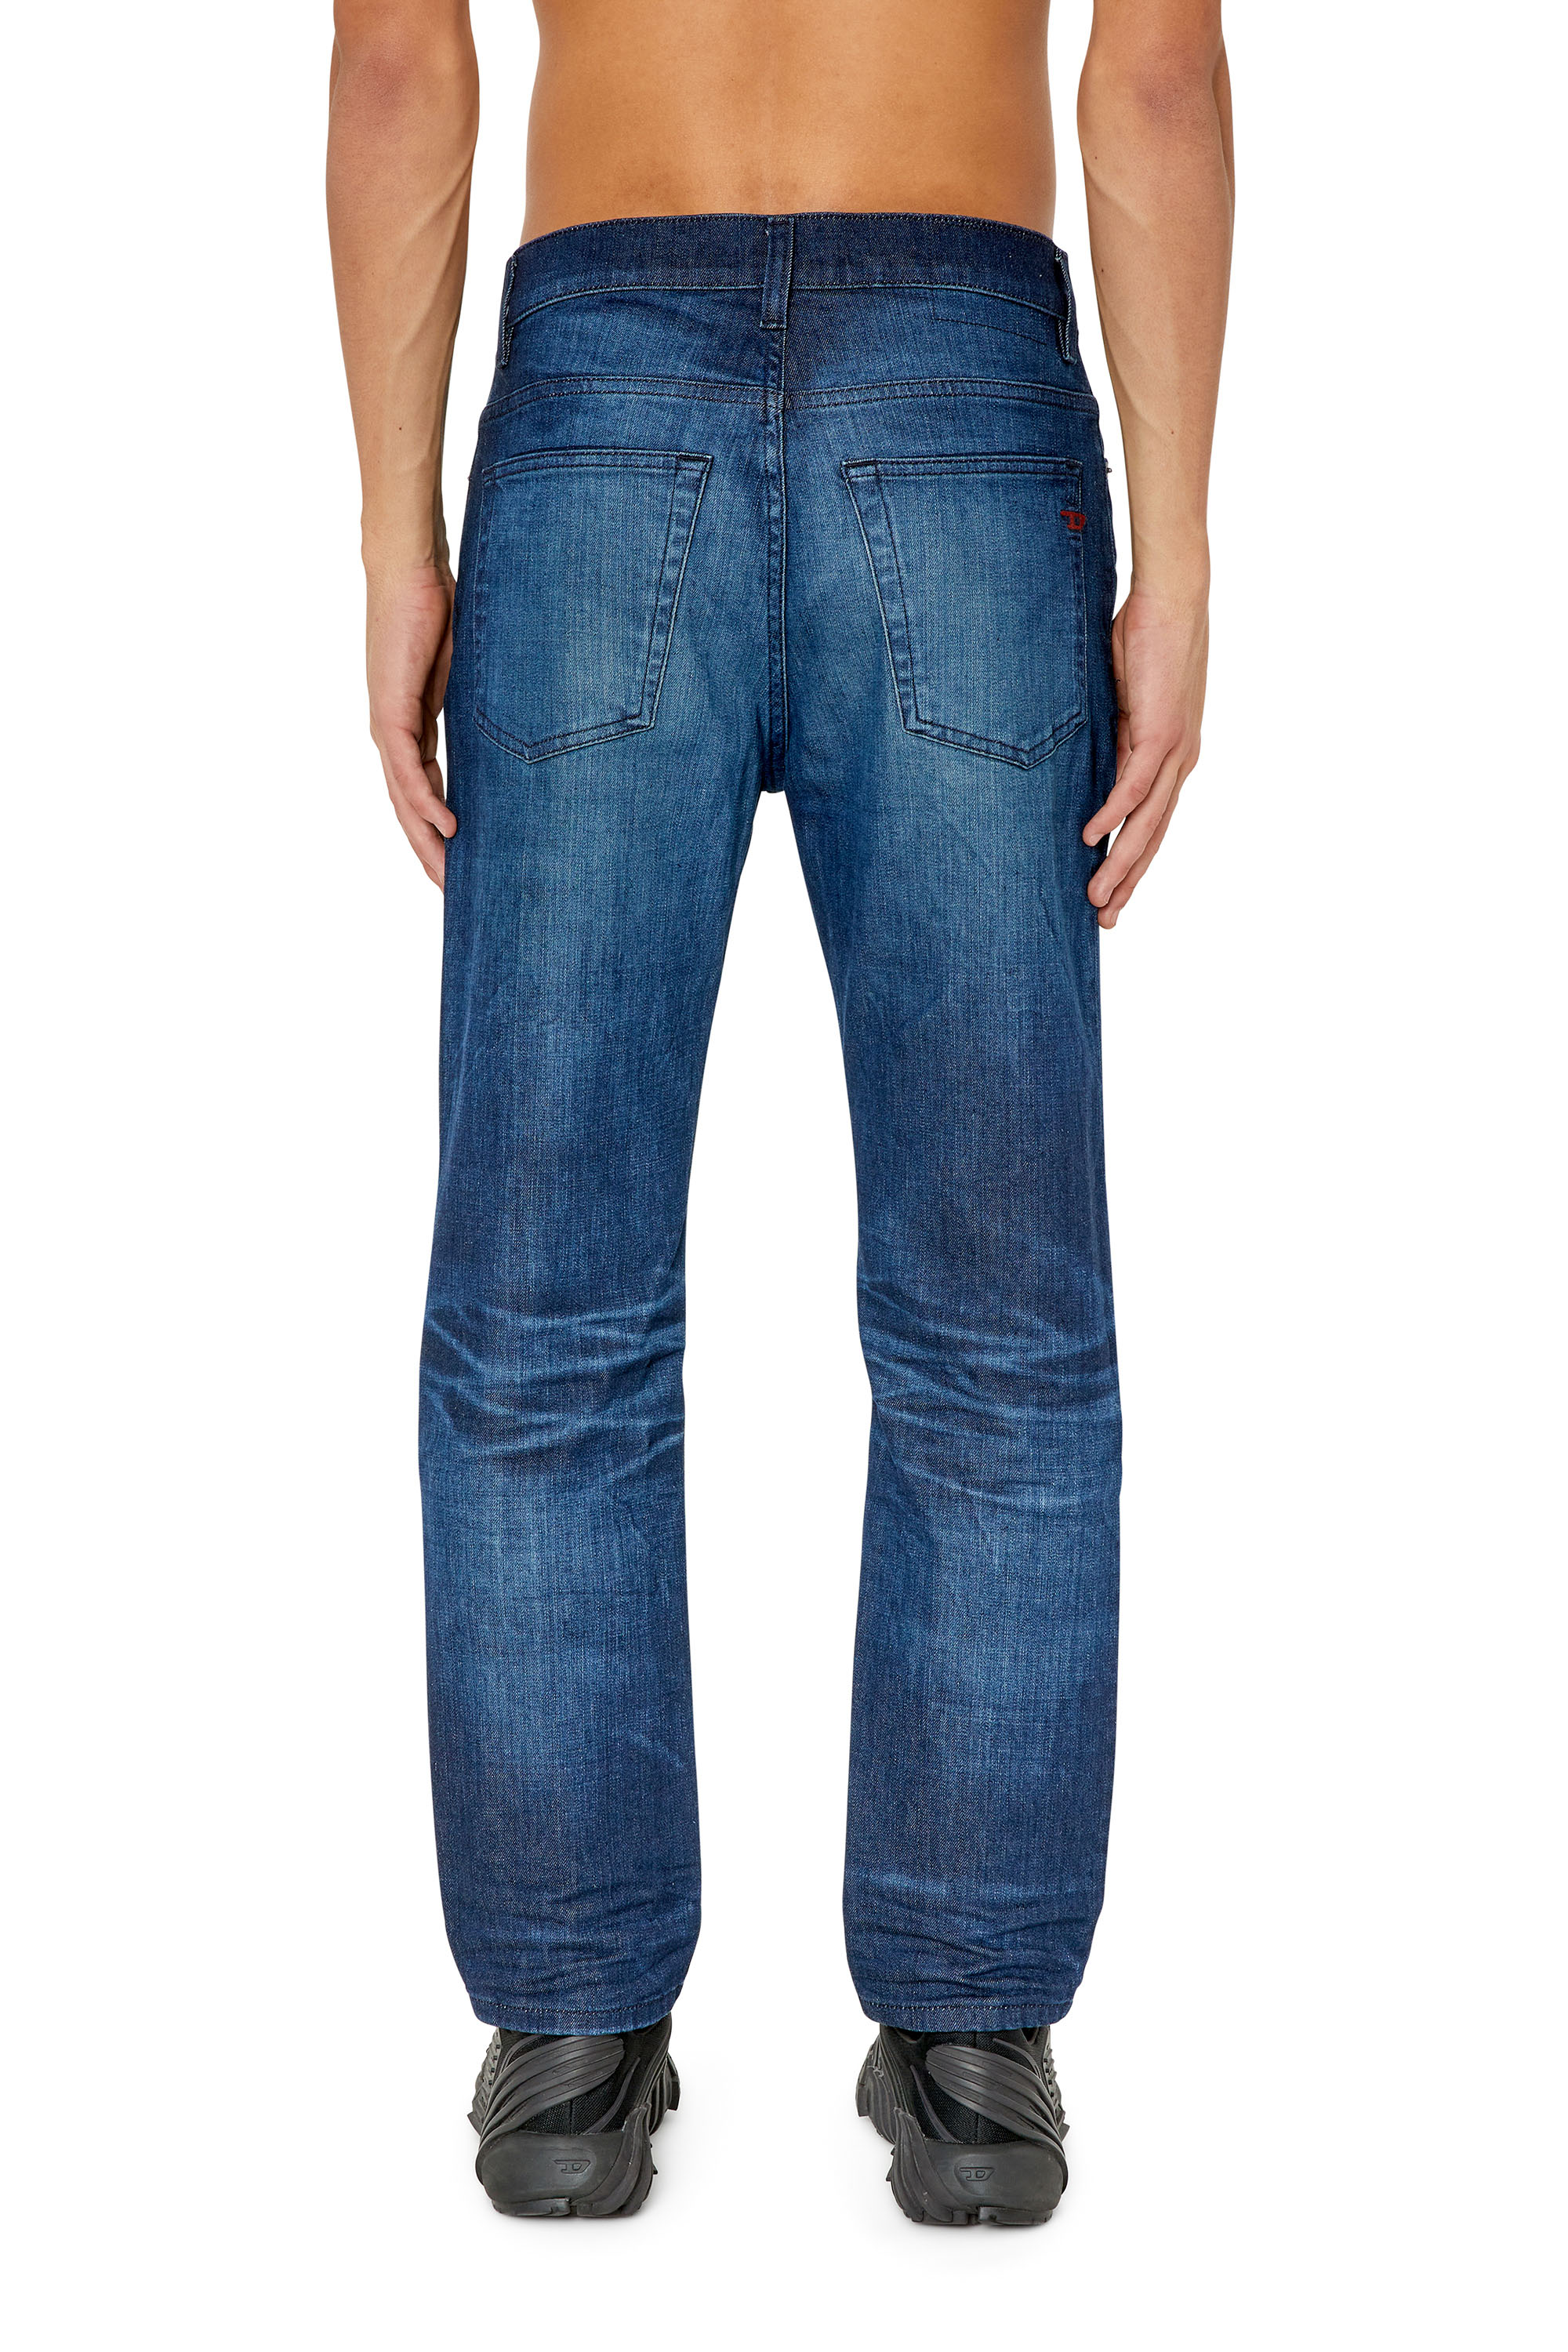 Made in Italy Tapered Medium Blue Wash Jeans Amazon Uomo Abbigliamento Pantaloni e jeans Jeans Jeans affosulati 40 Uomo 